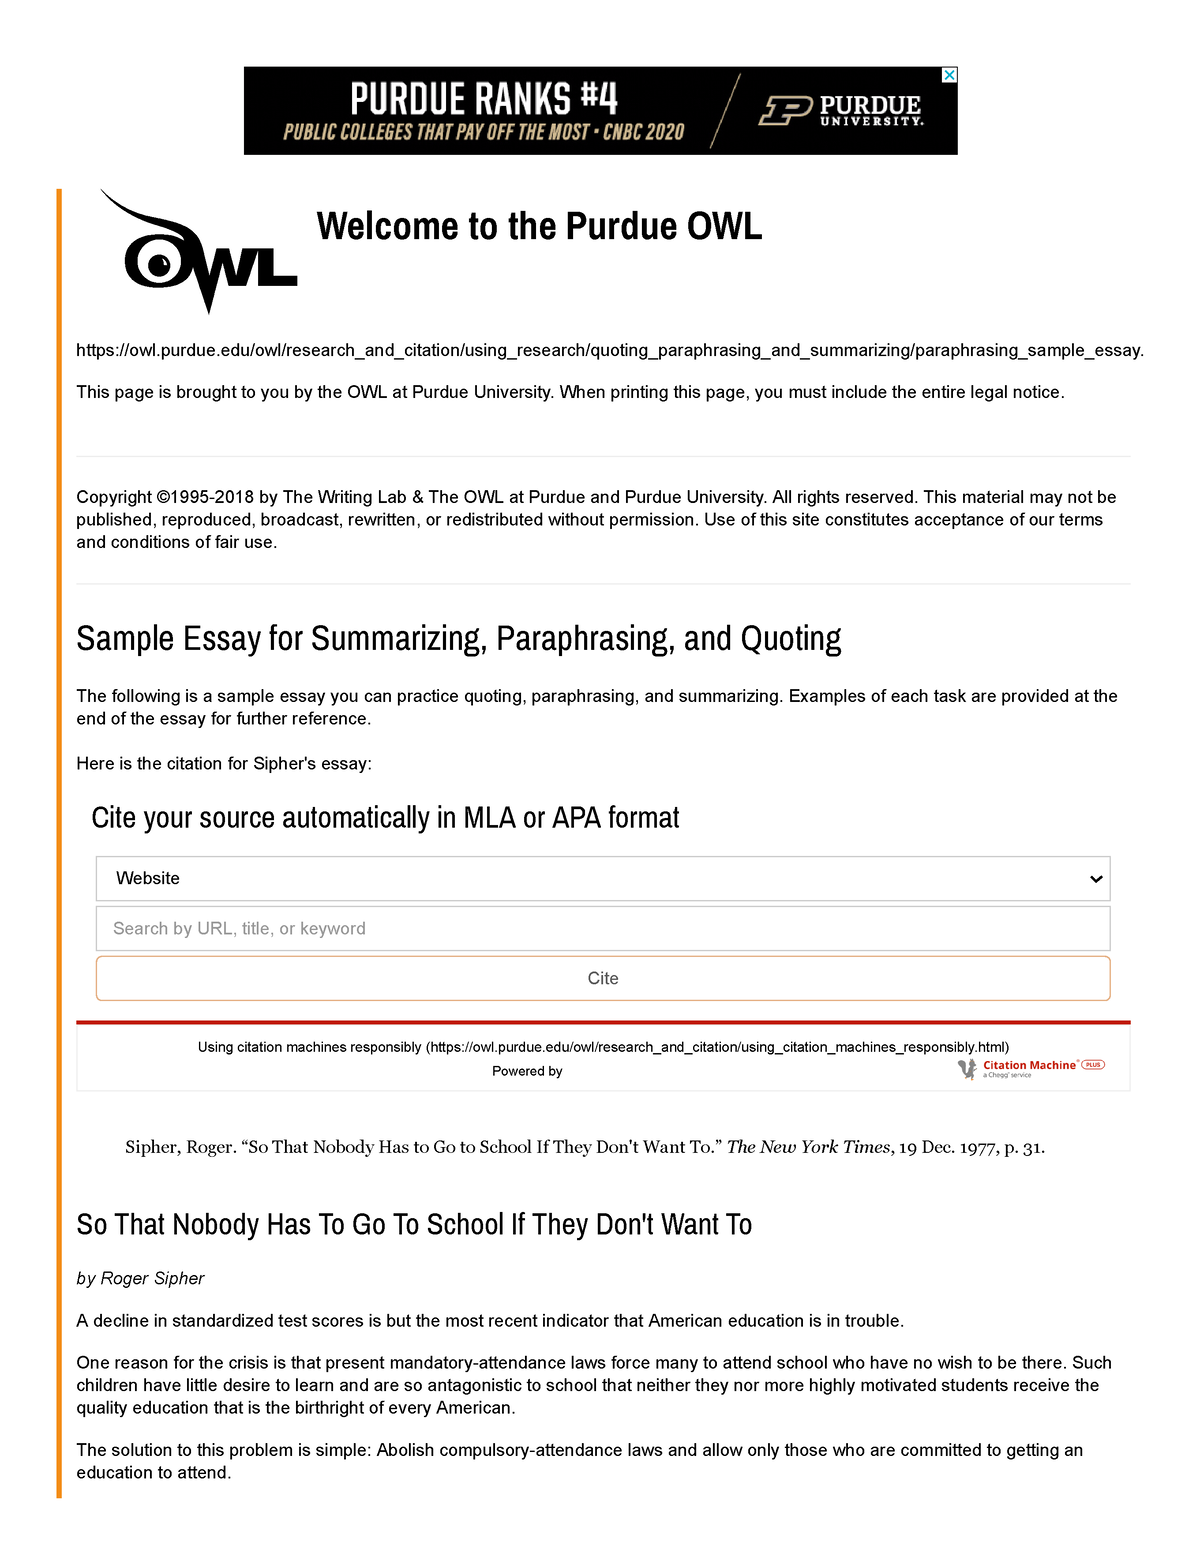 paraphrasing site http owl.english.purdue.edu